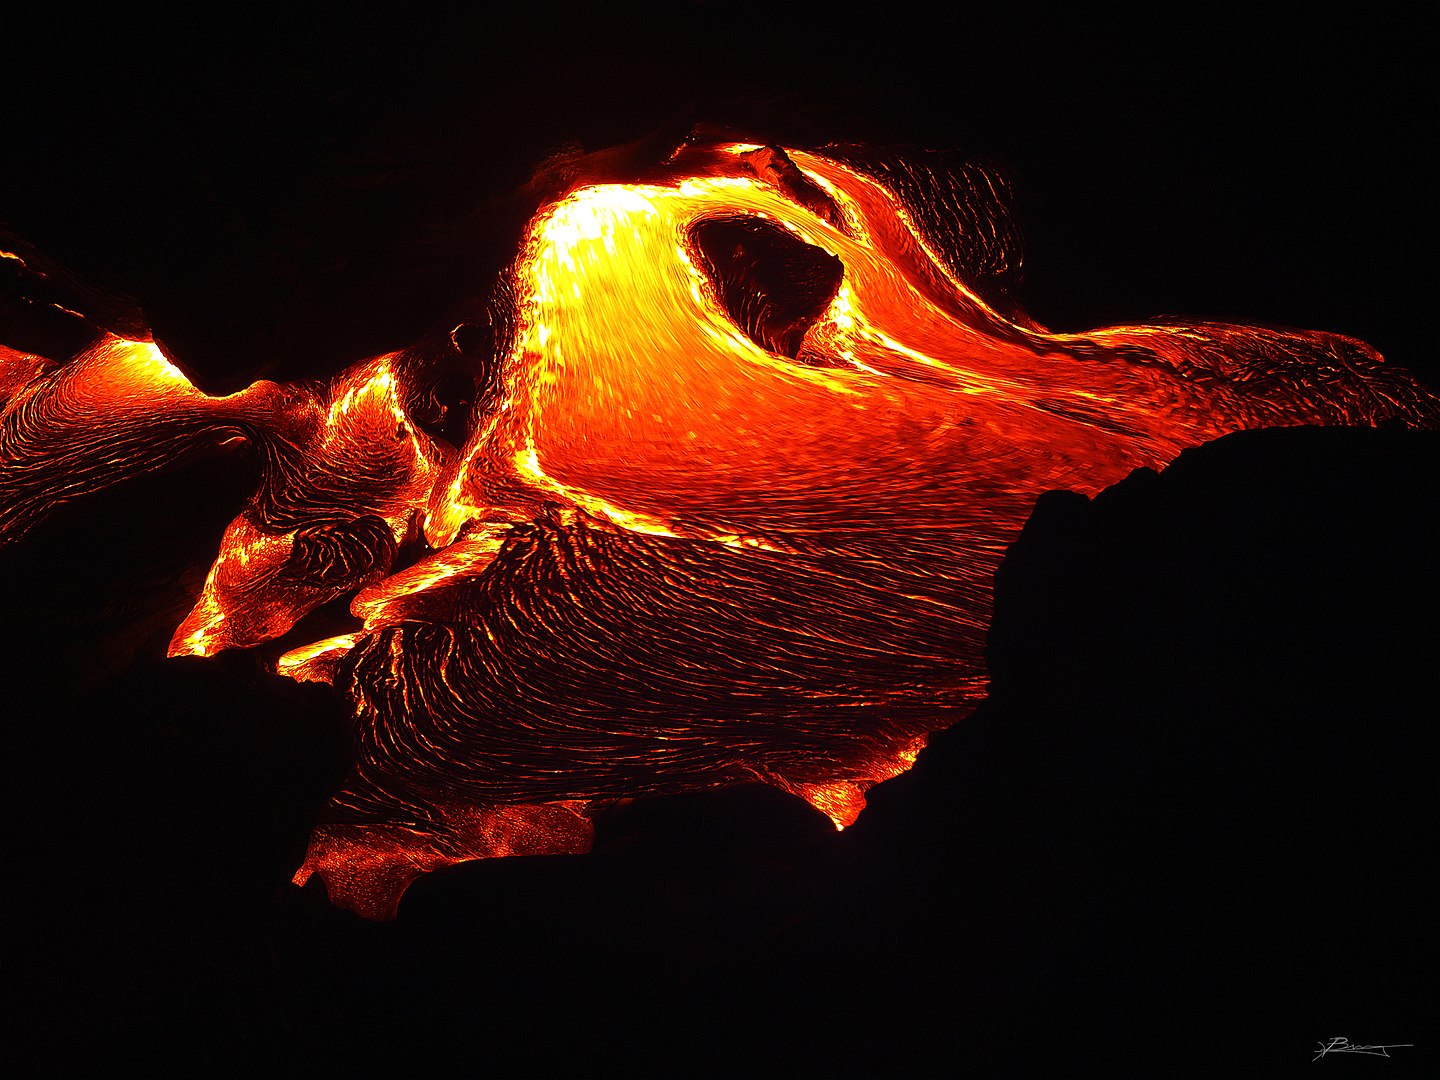 Fotografía del volcán Kilauea